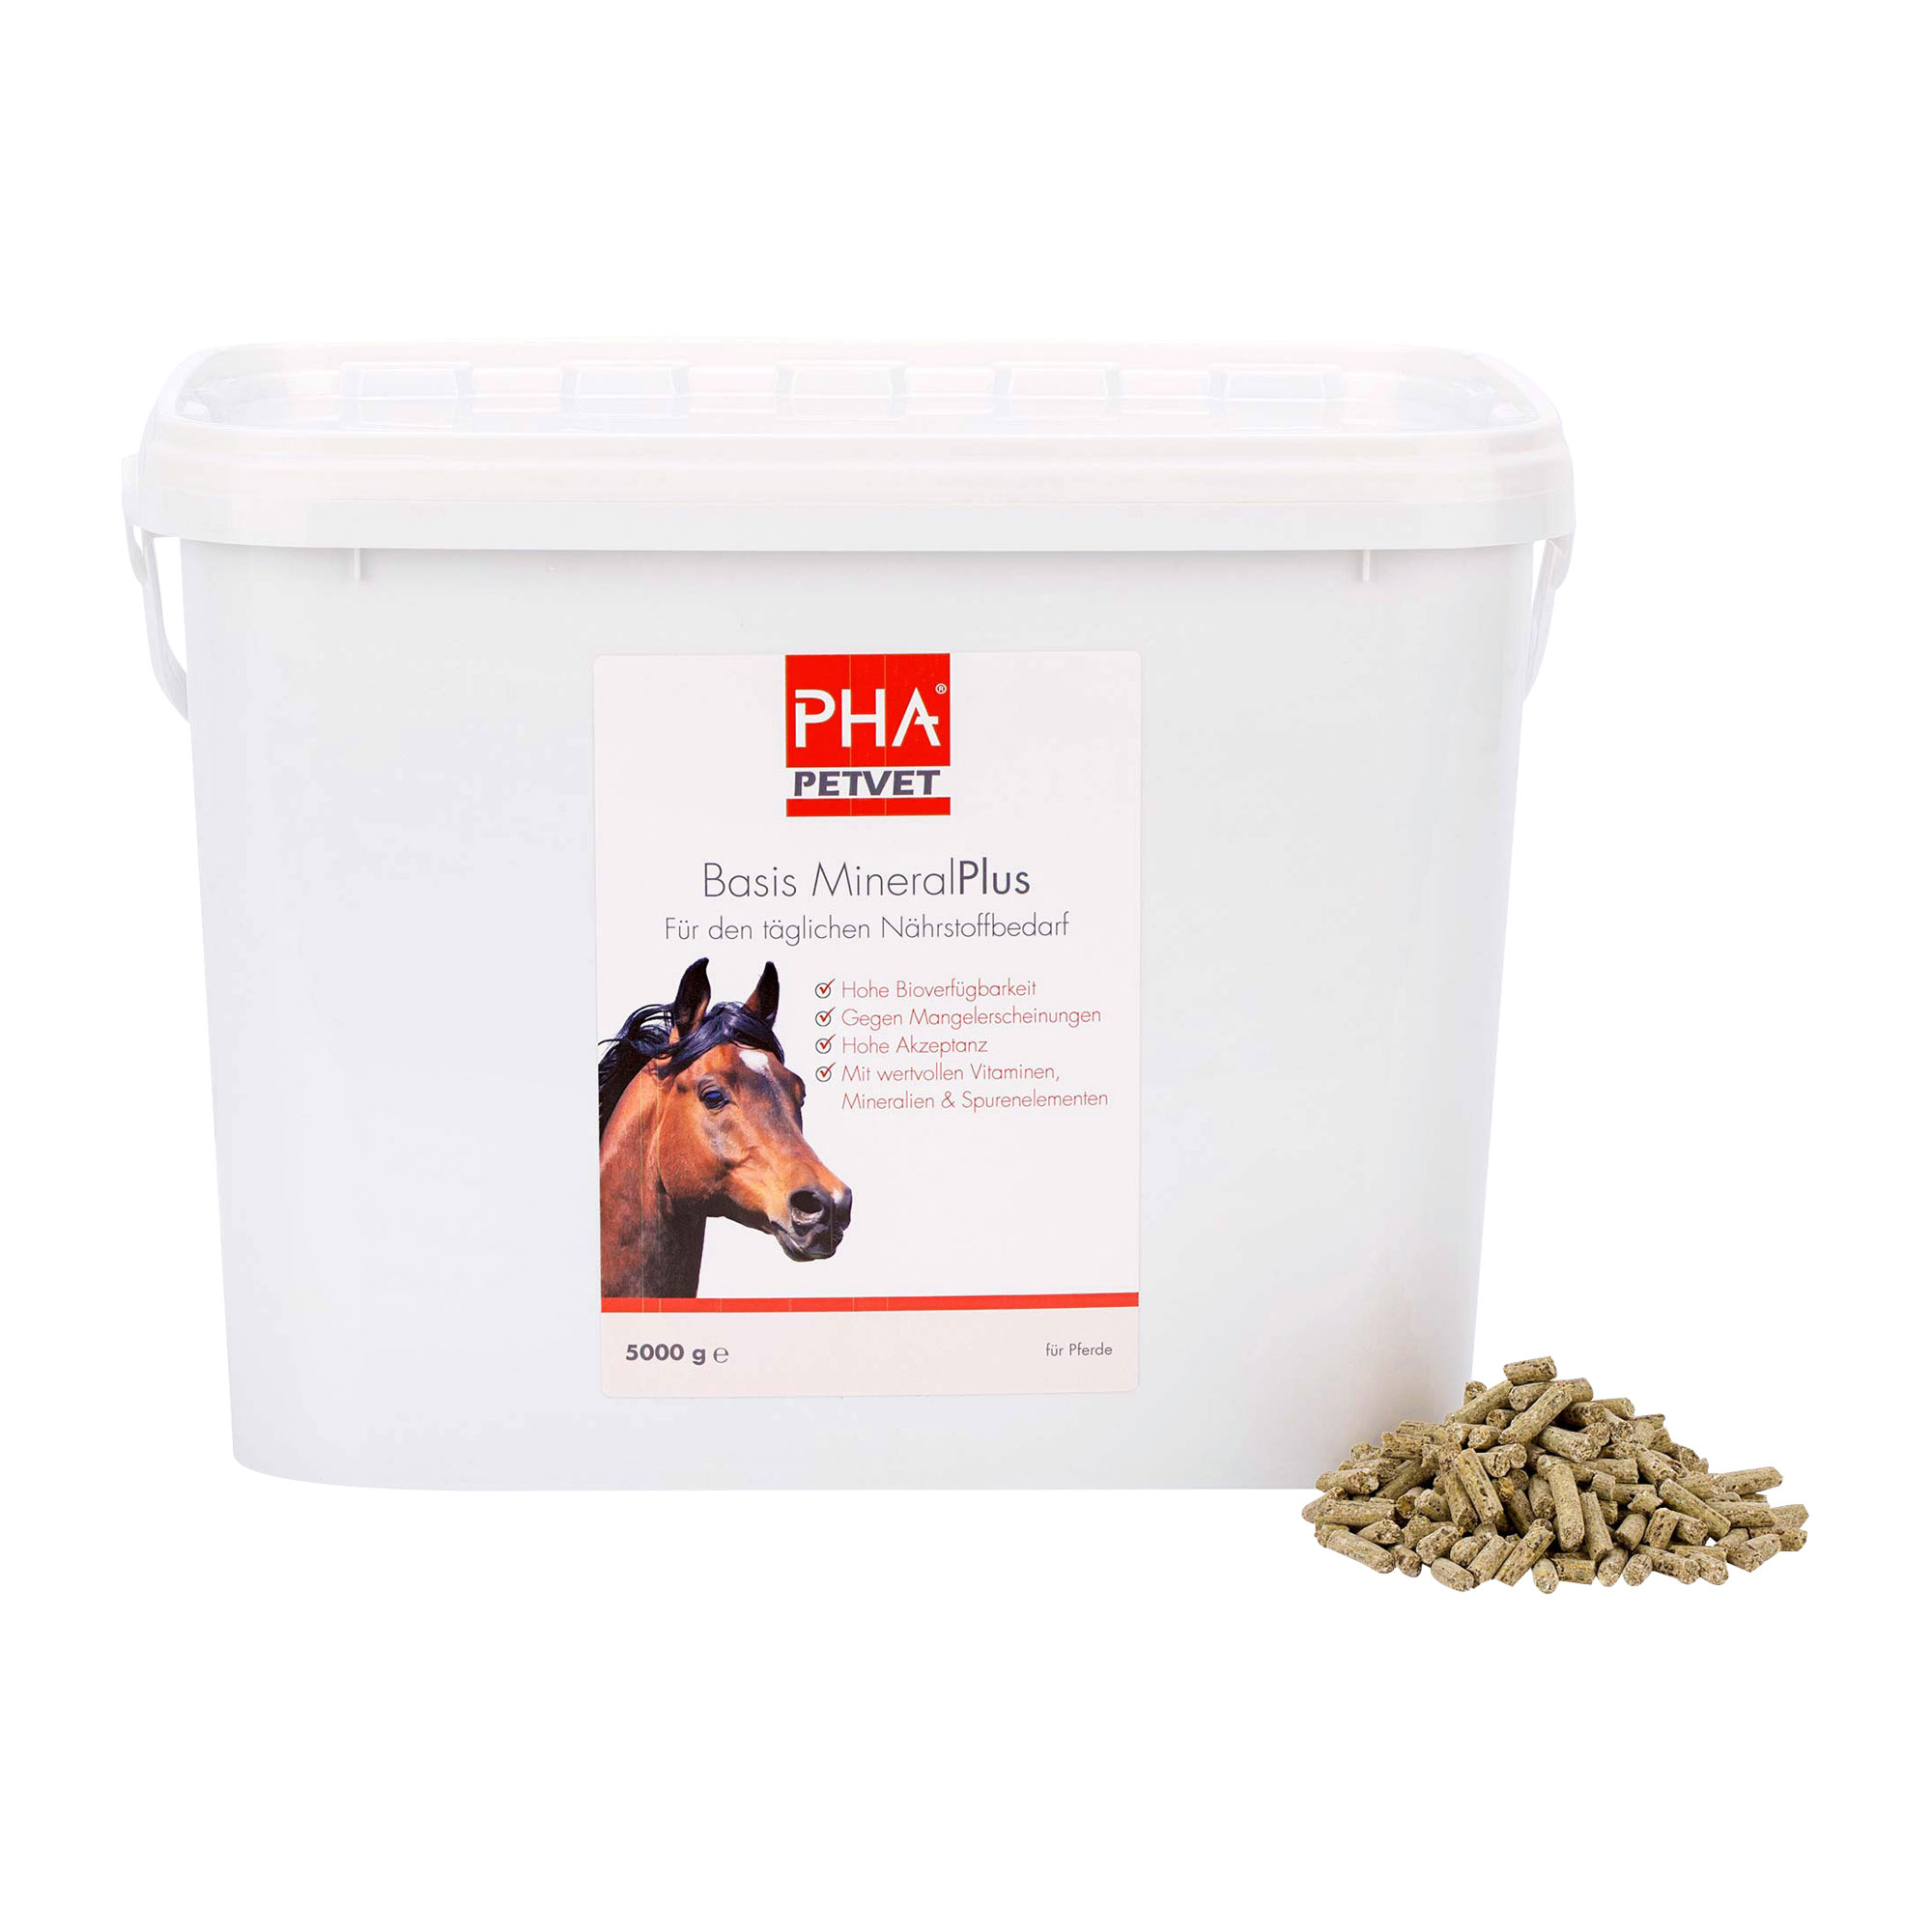 Mineralfuttermittel für Pferde für den täglichen Nährstoffbedarf.